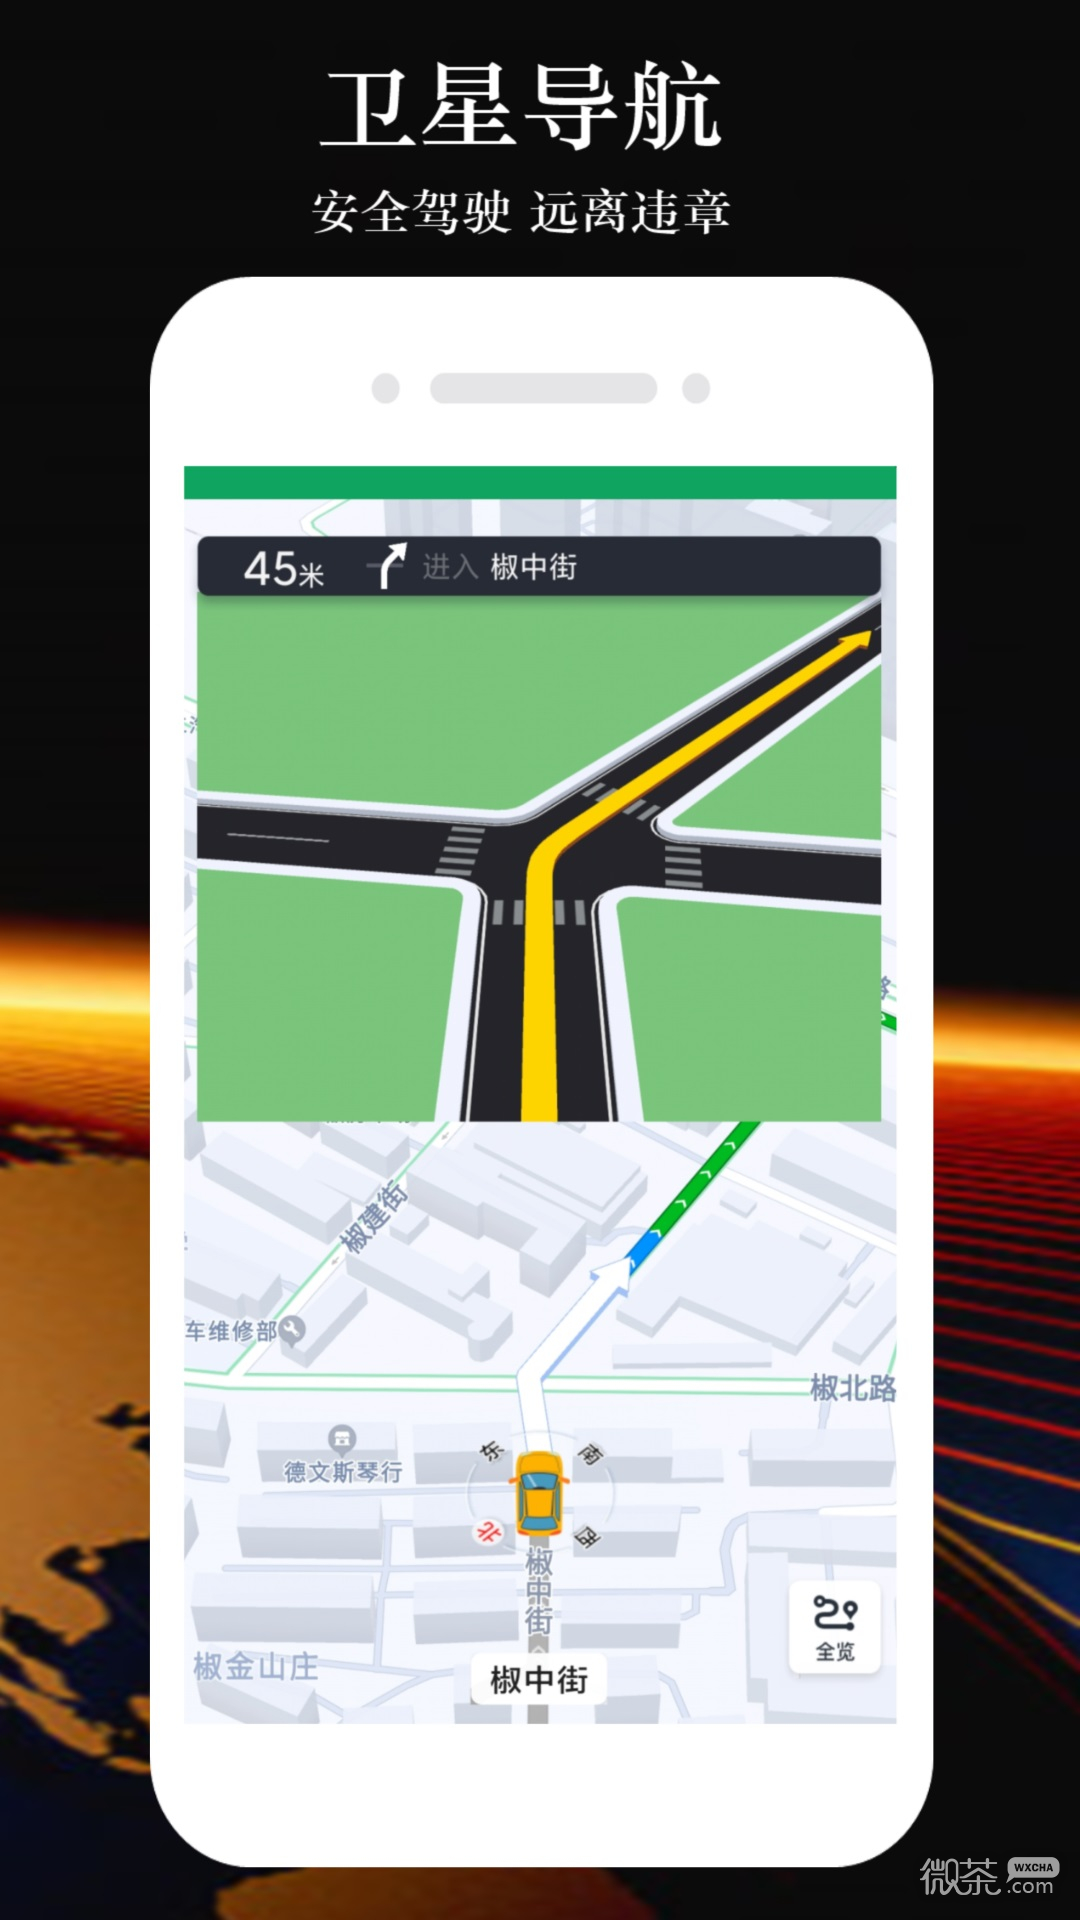 GPS手机导航最新版